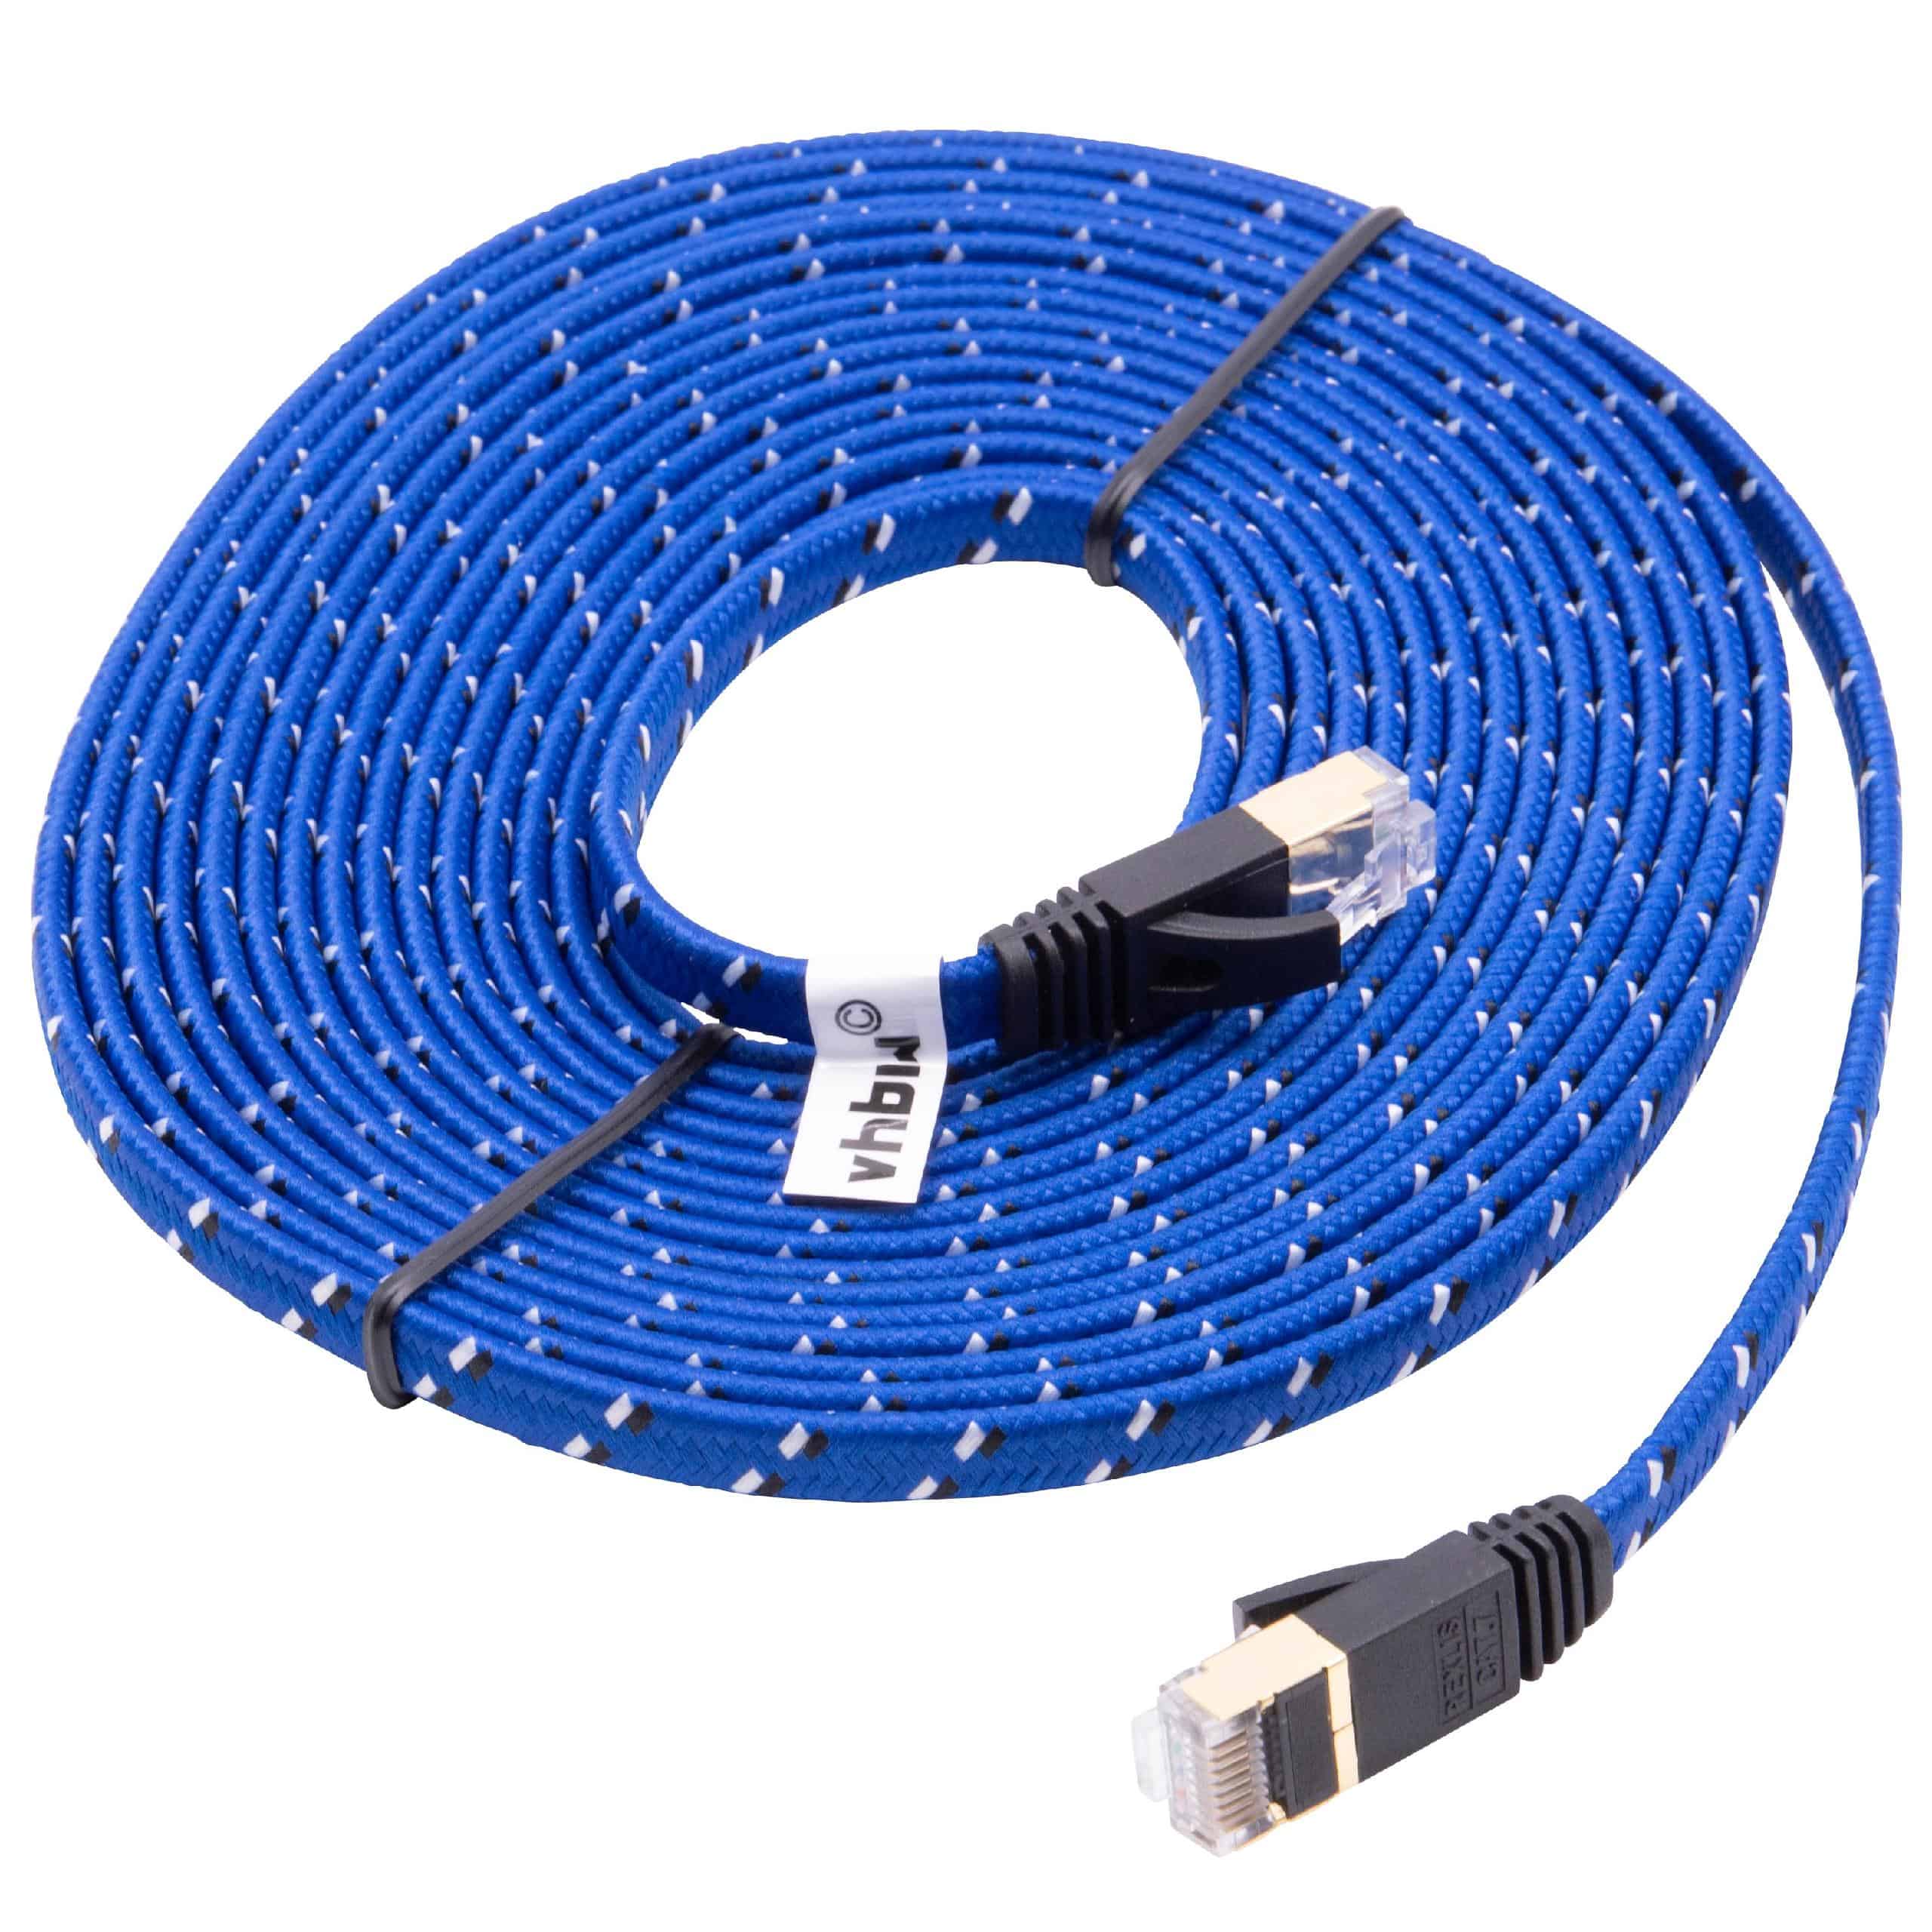 Netzwerkkabel LAN Kabel Patchkabel Cat7, 5m, blau, flach